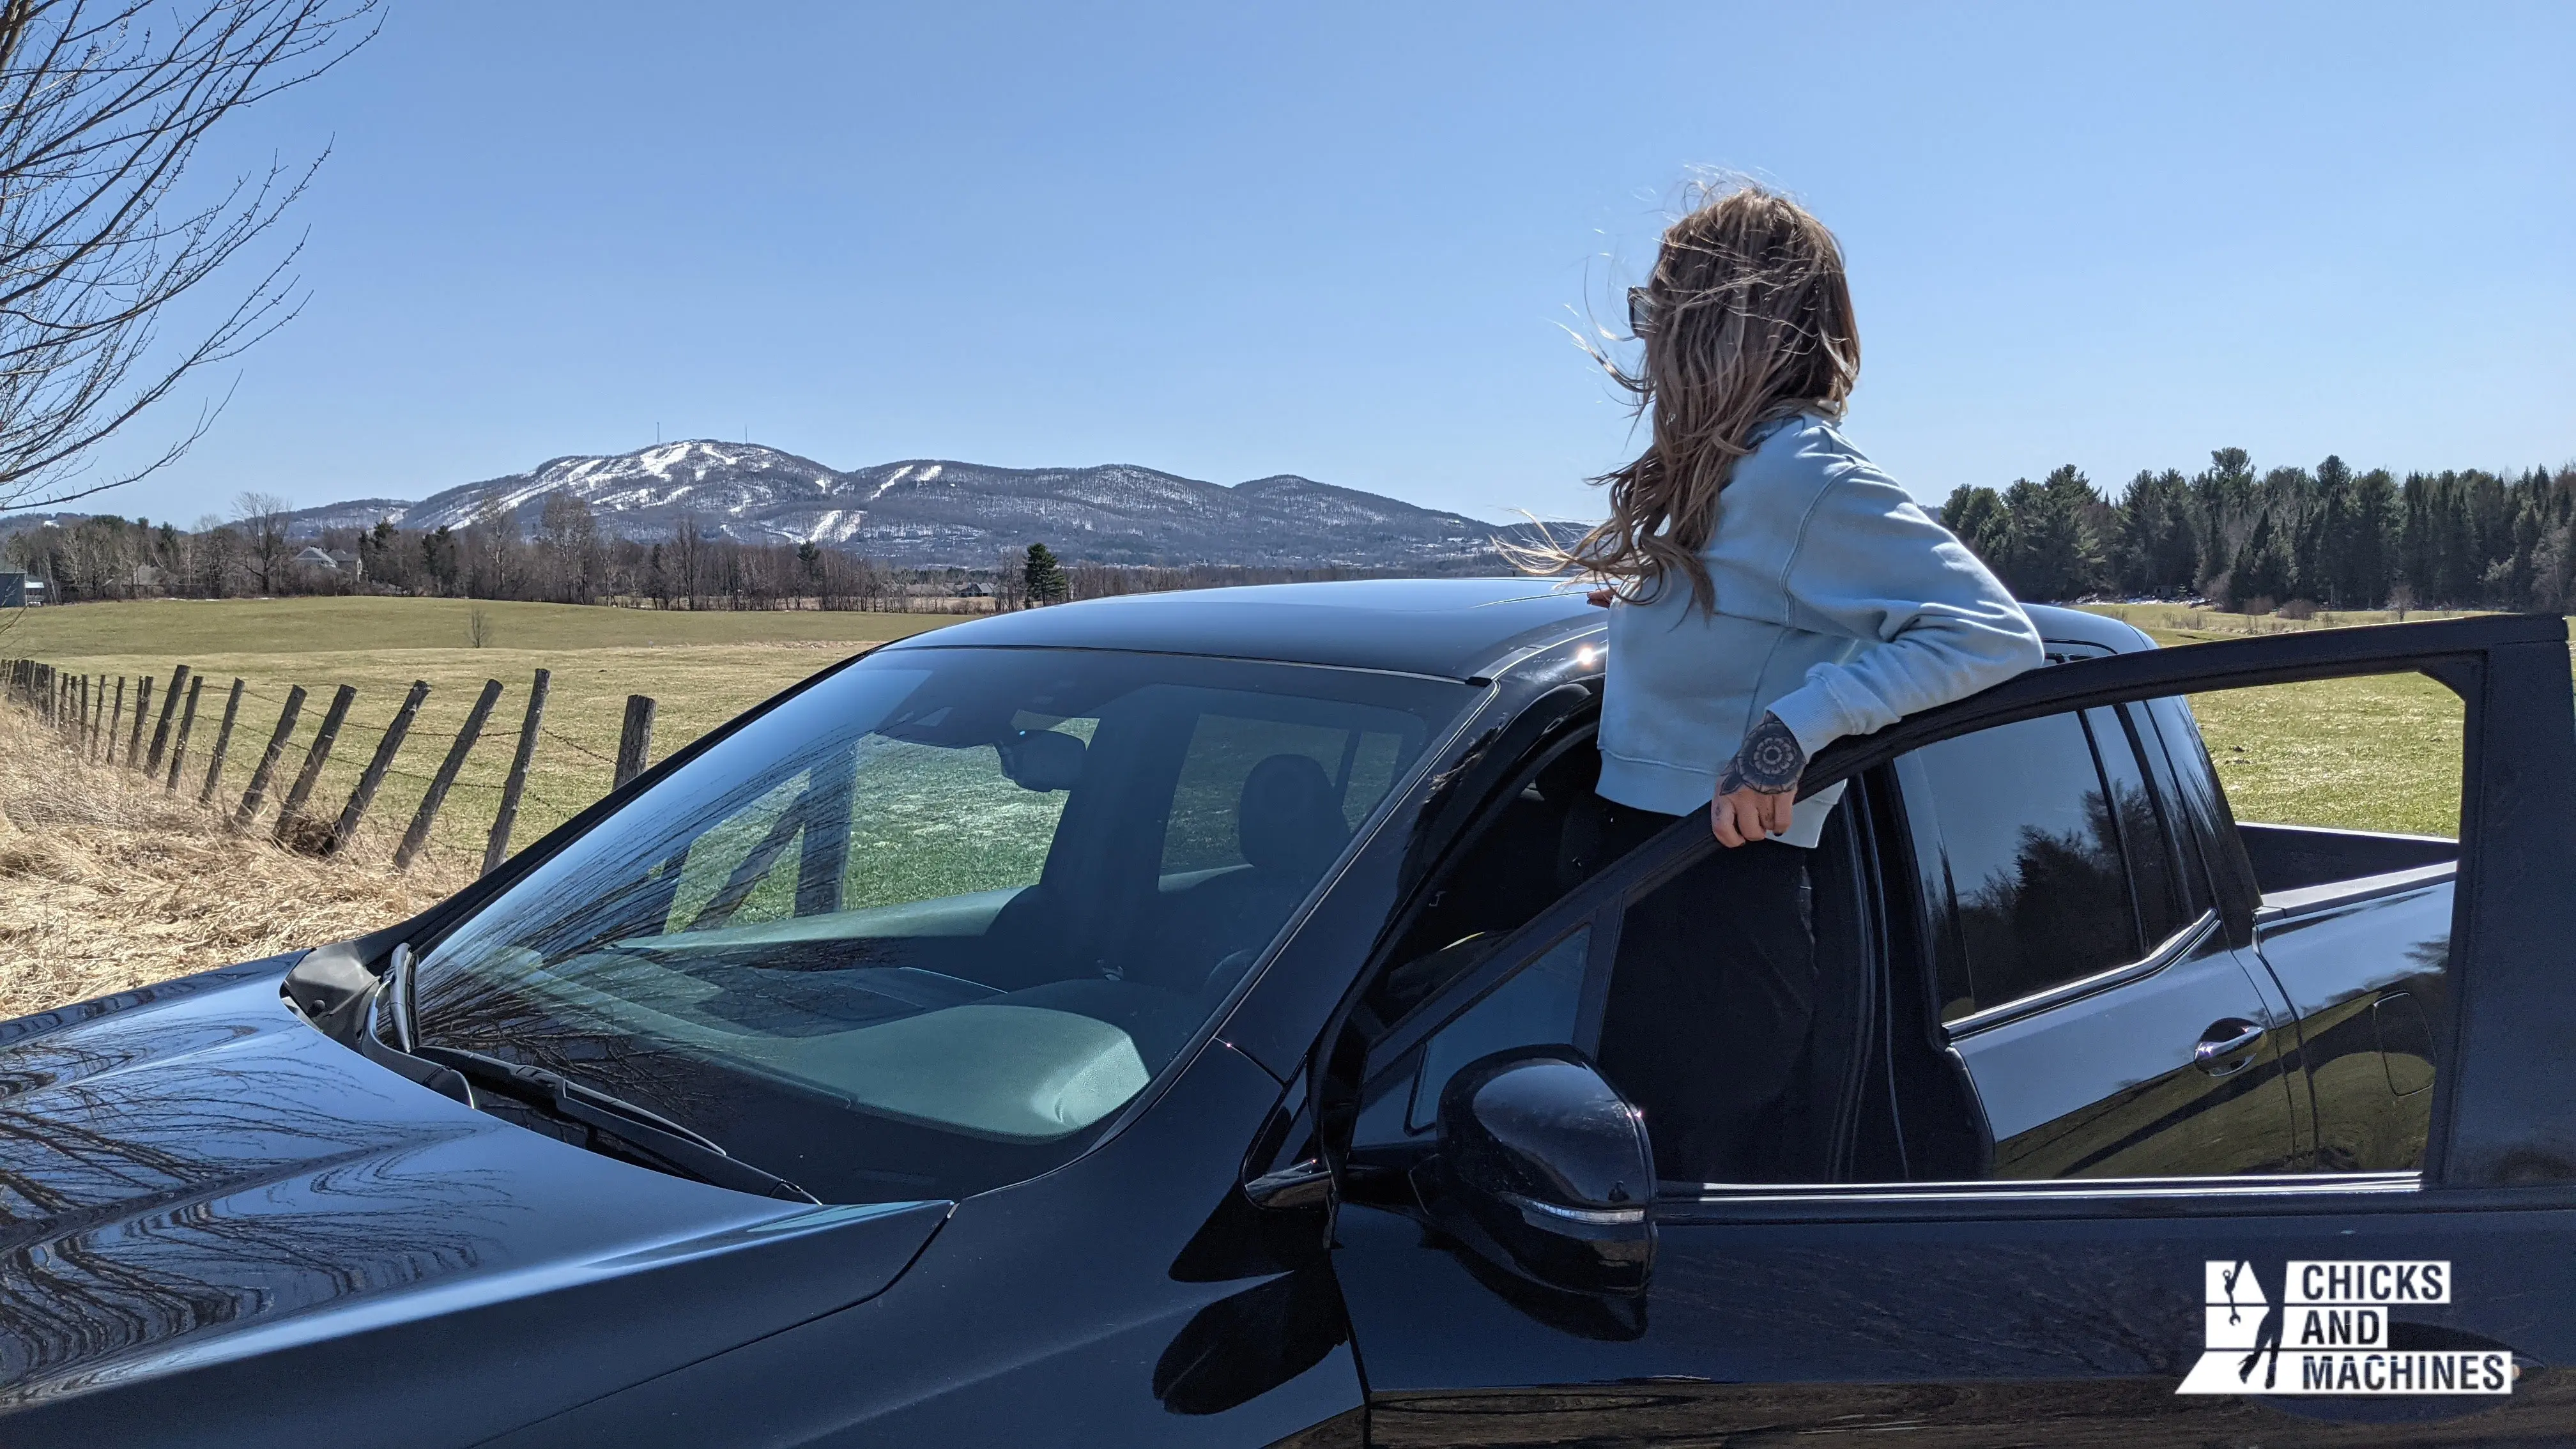 Cyn admire le magnifique paysage à la toute fin de son « road trip » à bord du Honda Ridgeline Black Edition 2020